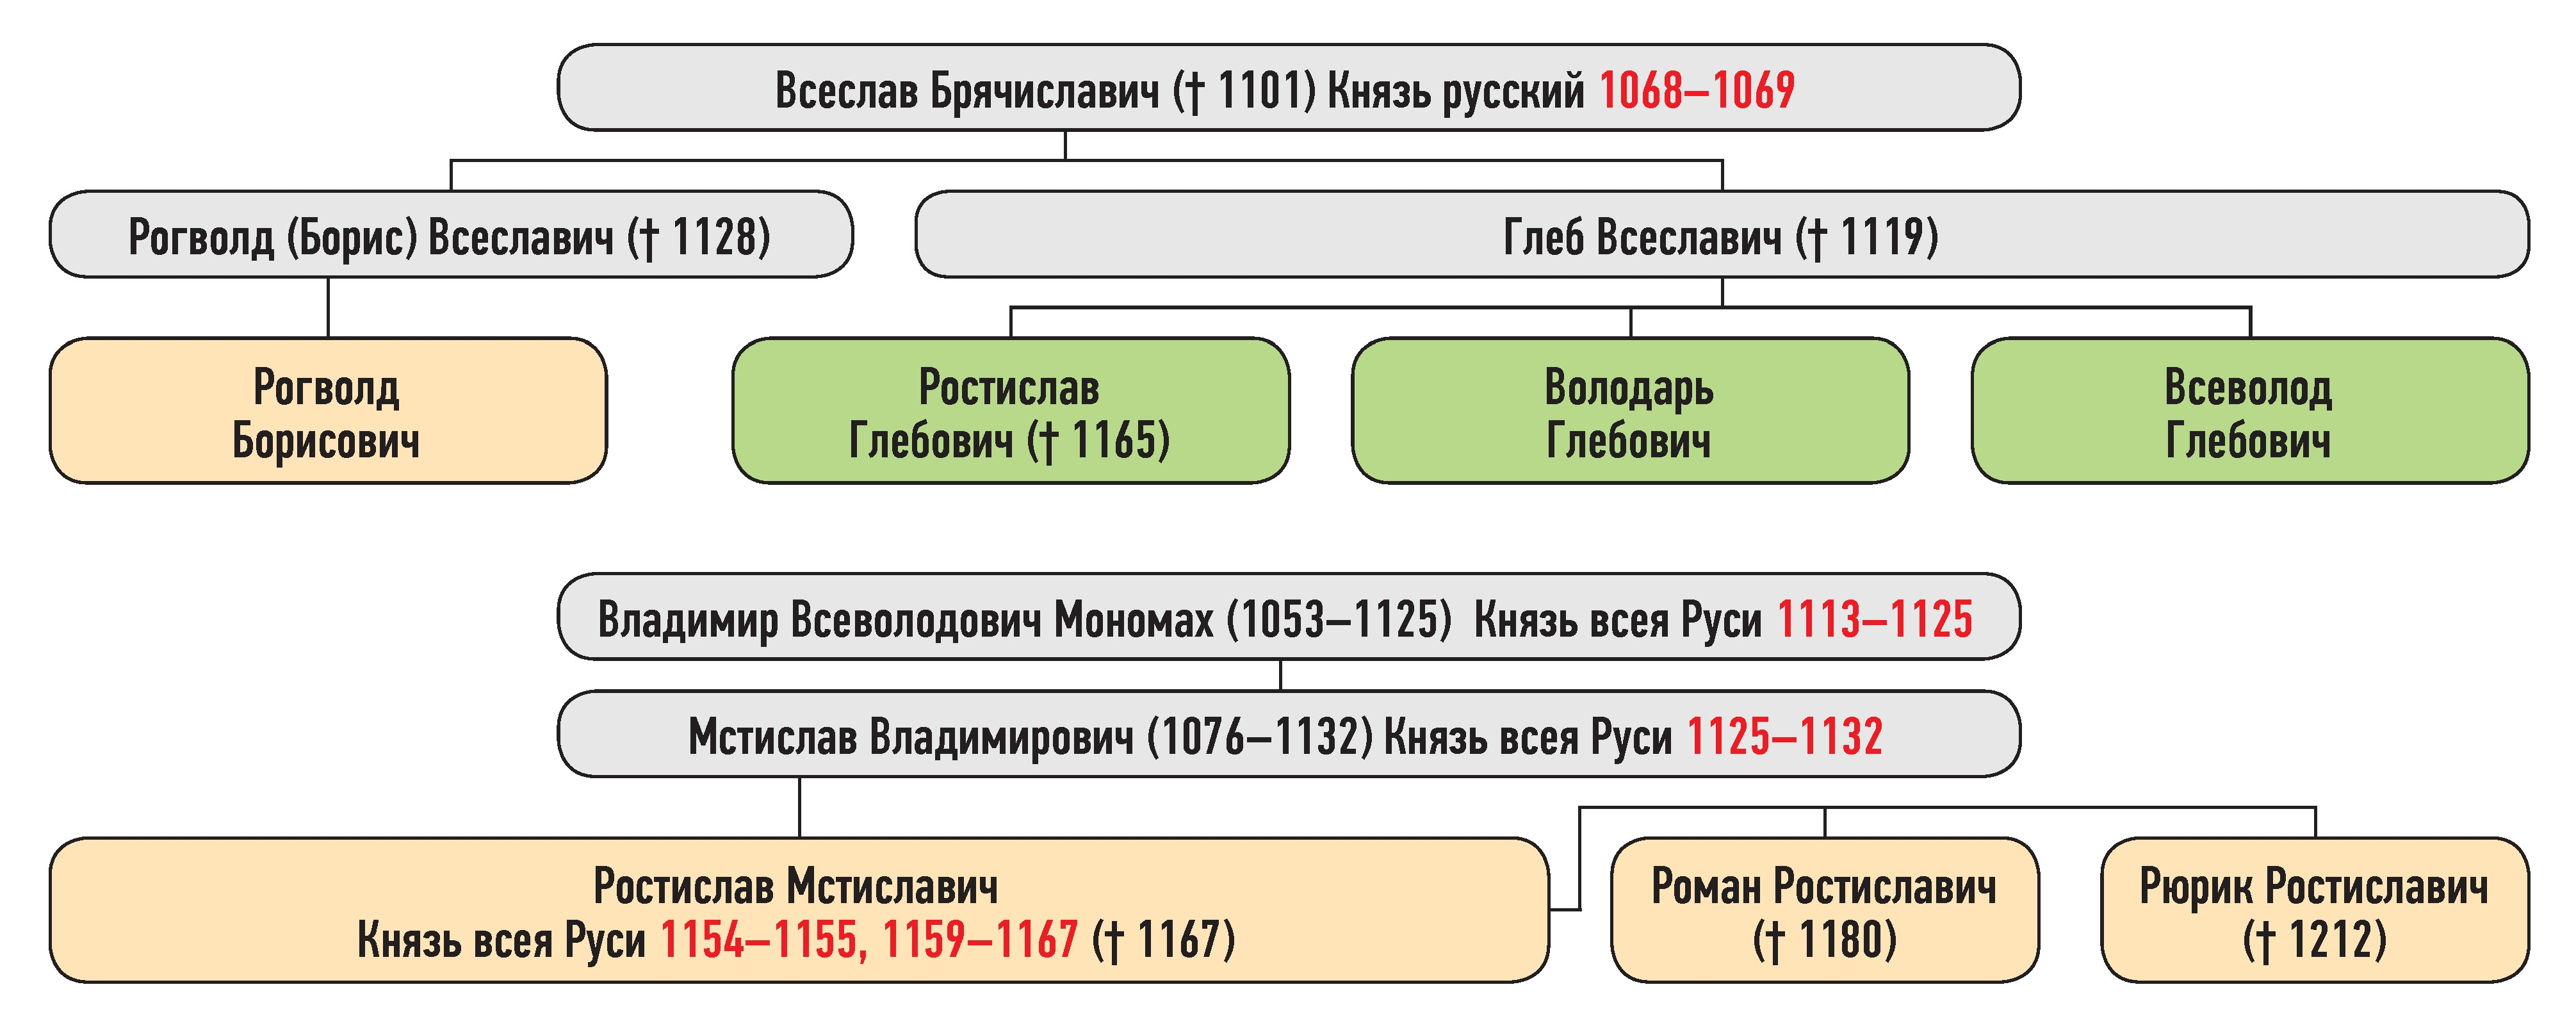 Генеалогическая схема к усобице Рогволода Борисовича и Ростислава Глебовича в июле 1159 г.